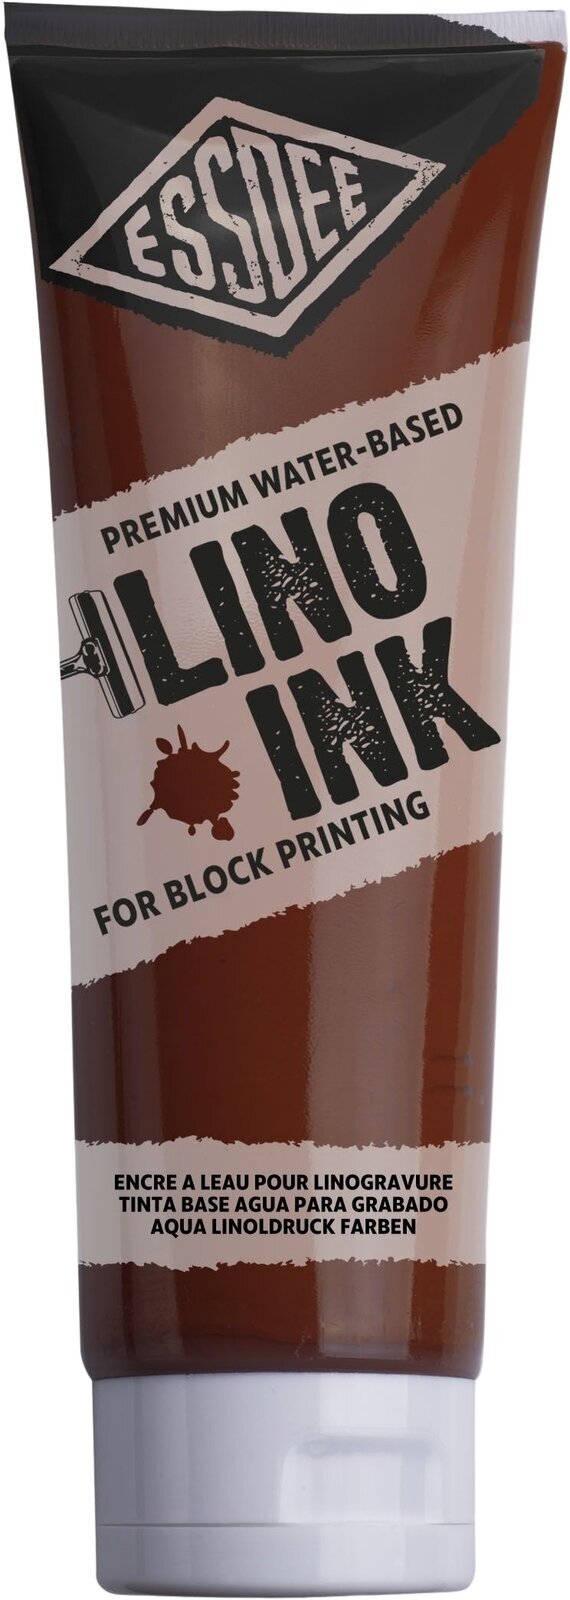 Paint For Linocut Essdee Block Printing Ink Paint For Linocut Burnt Sienna 300 ml